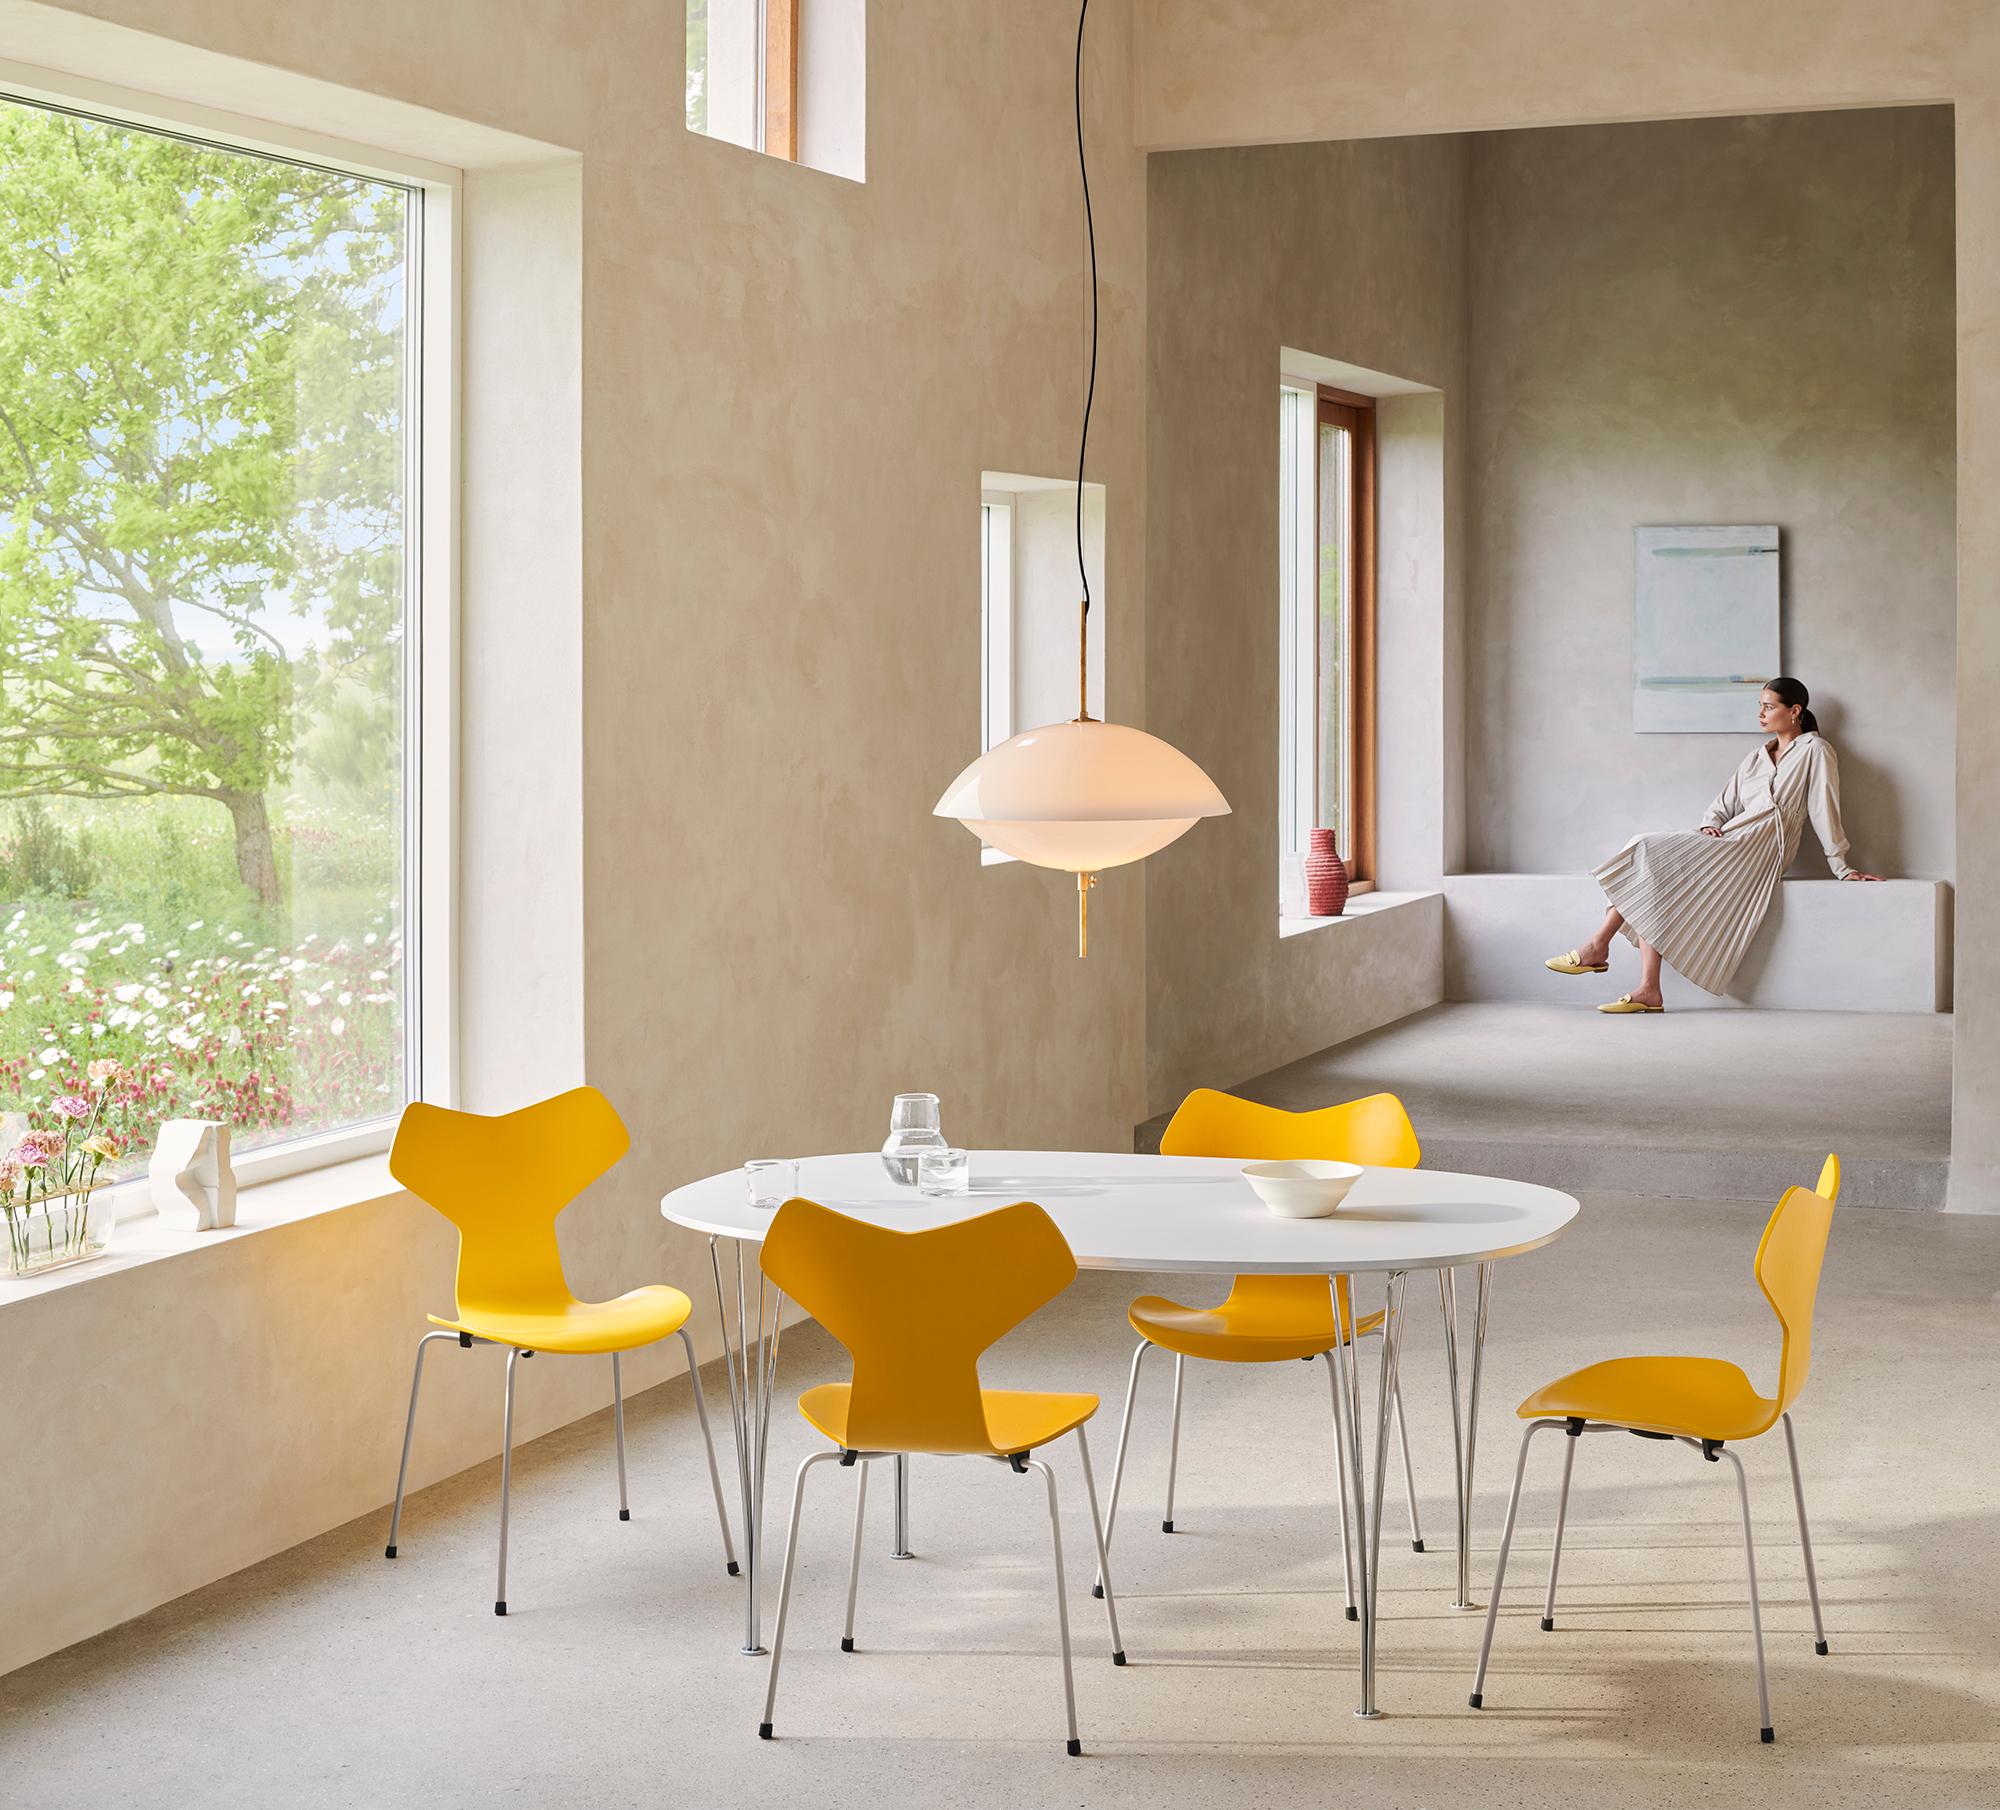 Arne Jacobsen 'Grand Prix' Stuhl für Fritz Hansen in lackiertem Furnier.

Fritz Hansen wurde 1872 gegründet und ist zum Synonym für legendäres dänisches Design geworden. Die Marke kombiniert zeitlose Handwerkskunst mit einem Schwerpunkt auf